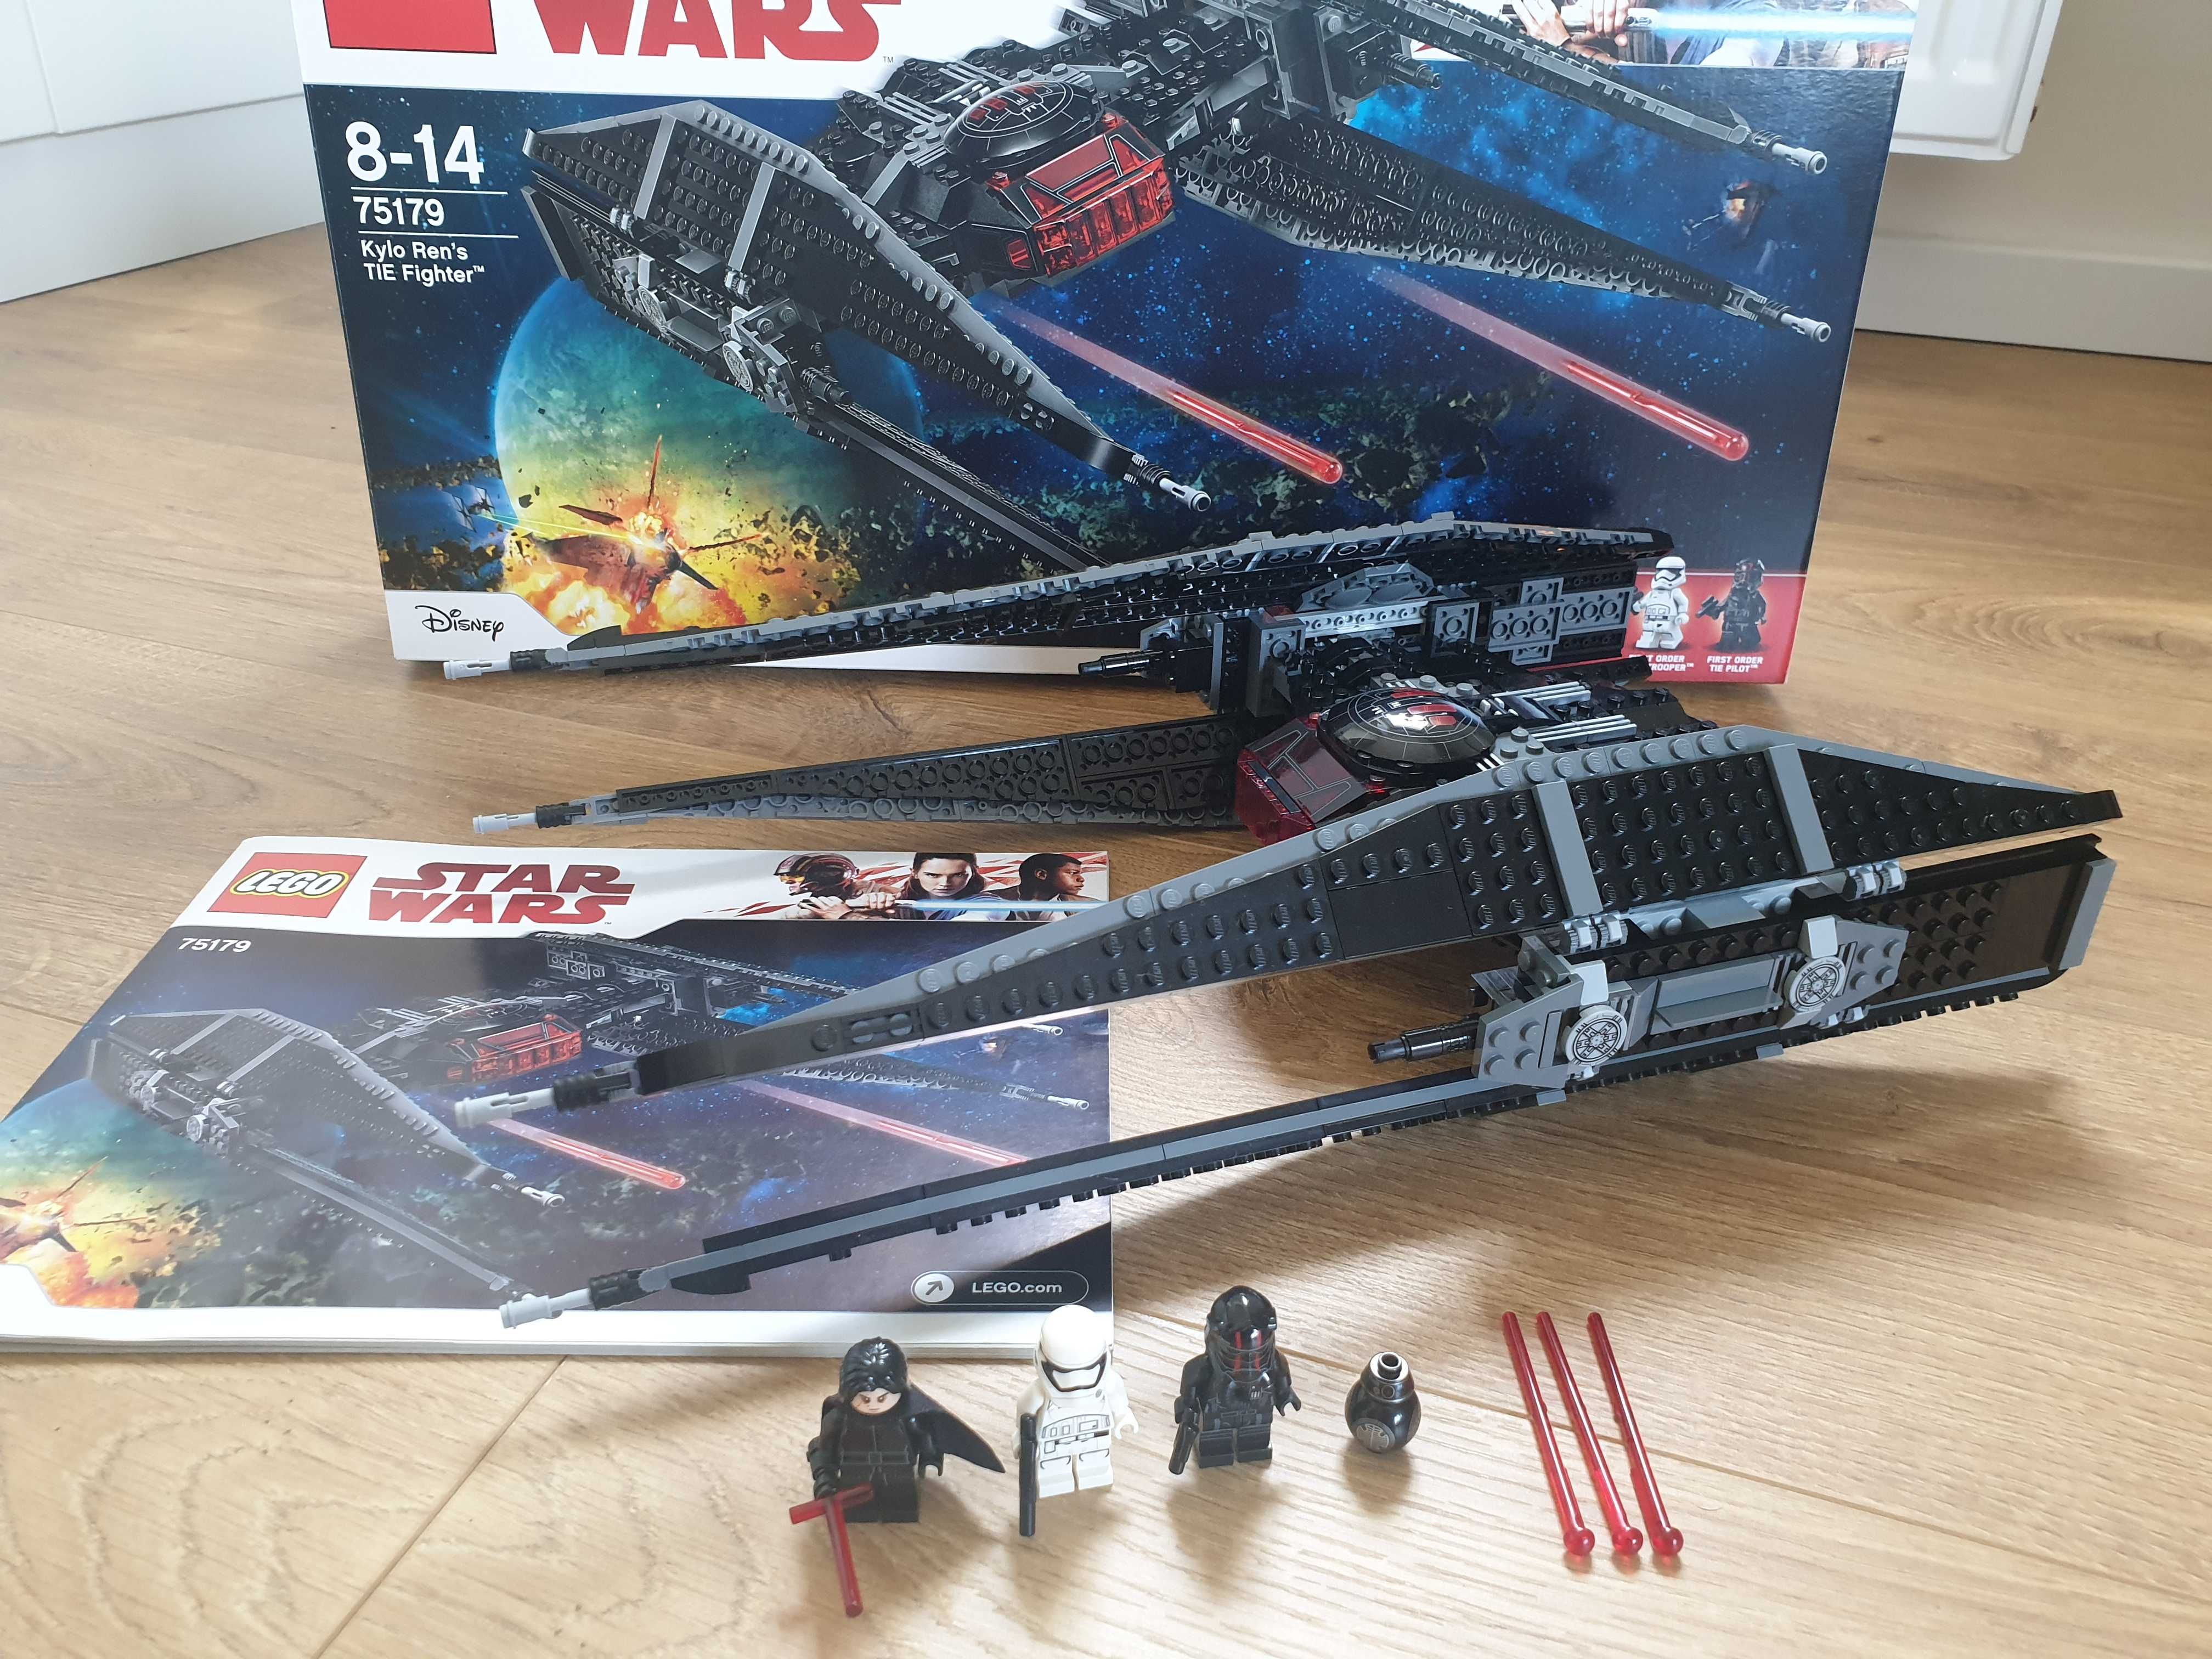 Lego Star Wars 75179 - Kylo Ren's TIE Fighter